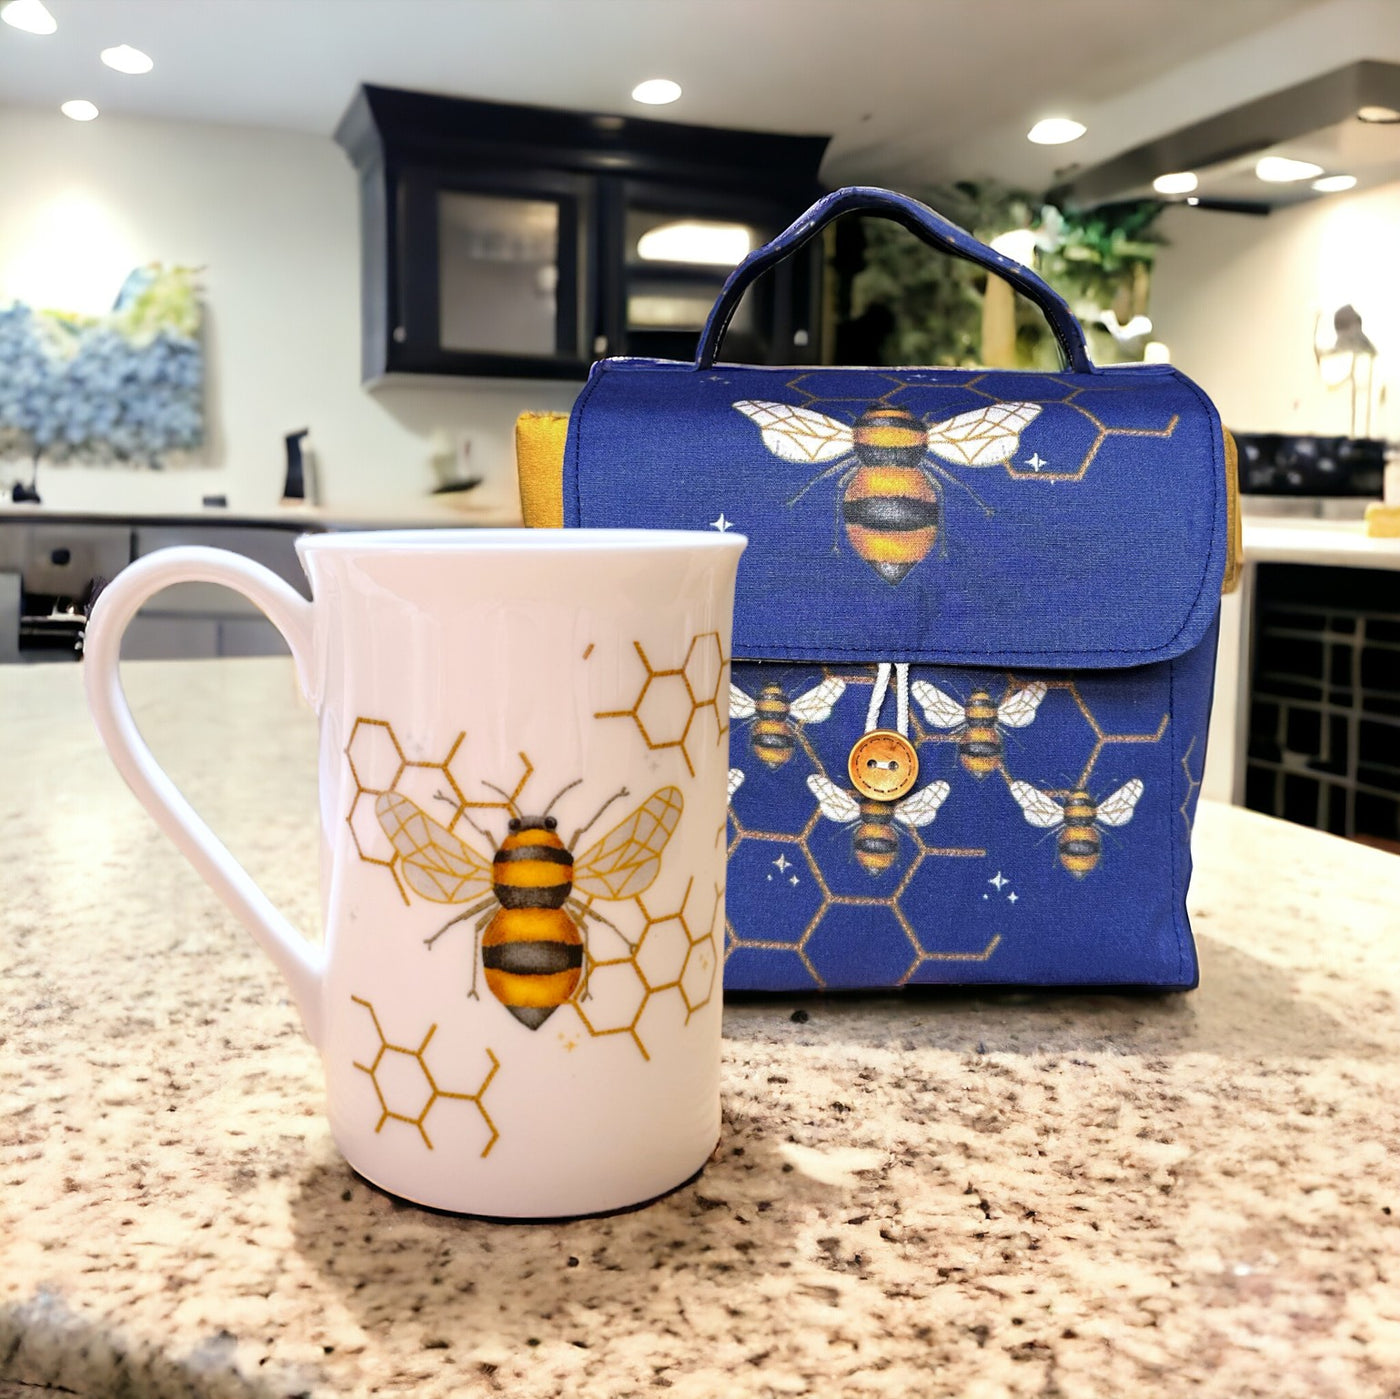 Mug Carry Case Set & Bone China Mug Bundle - Busy Bees